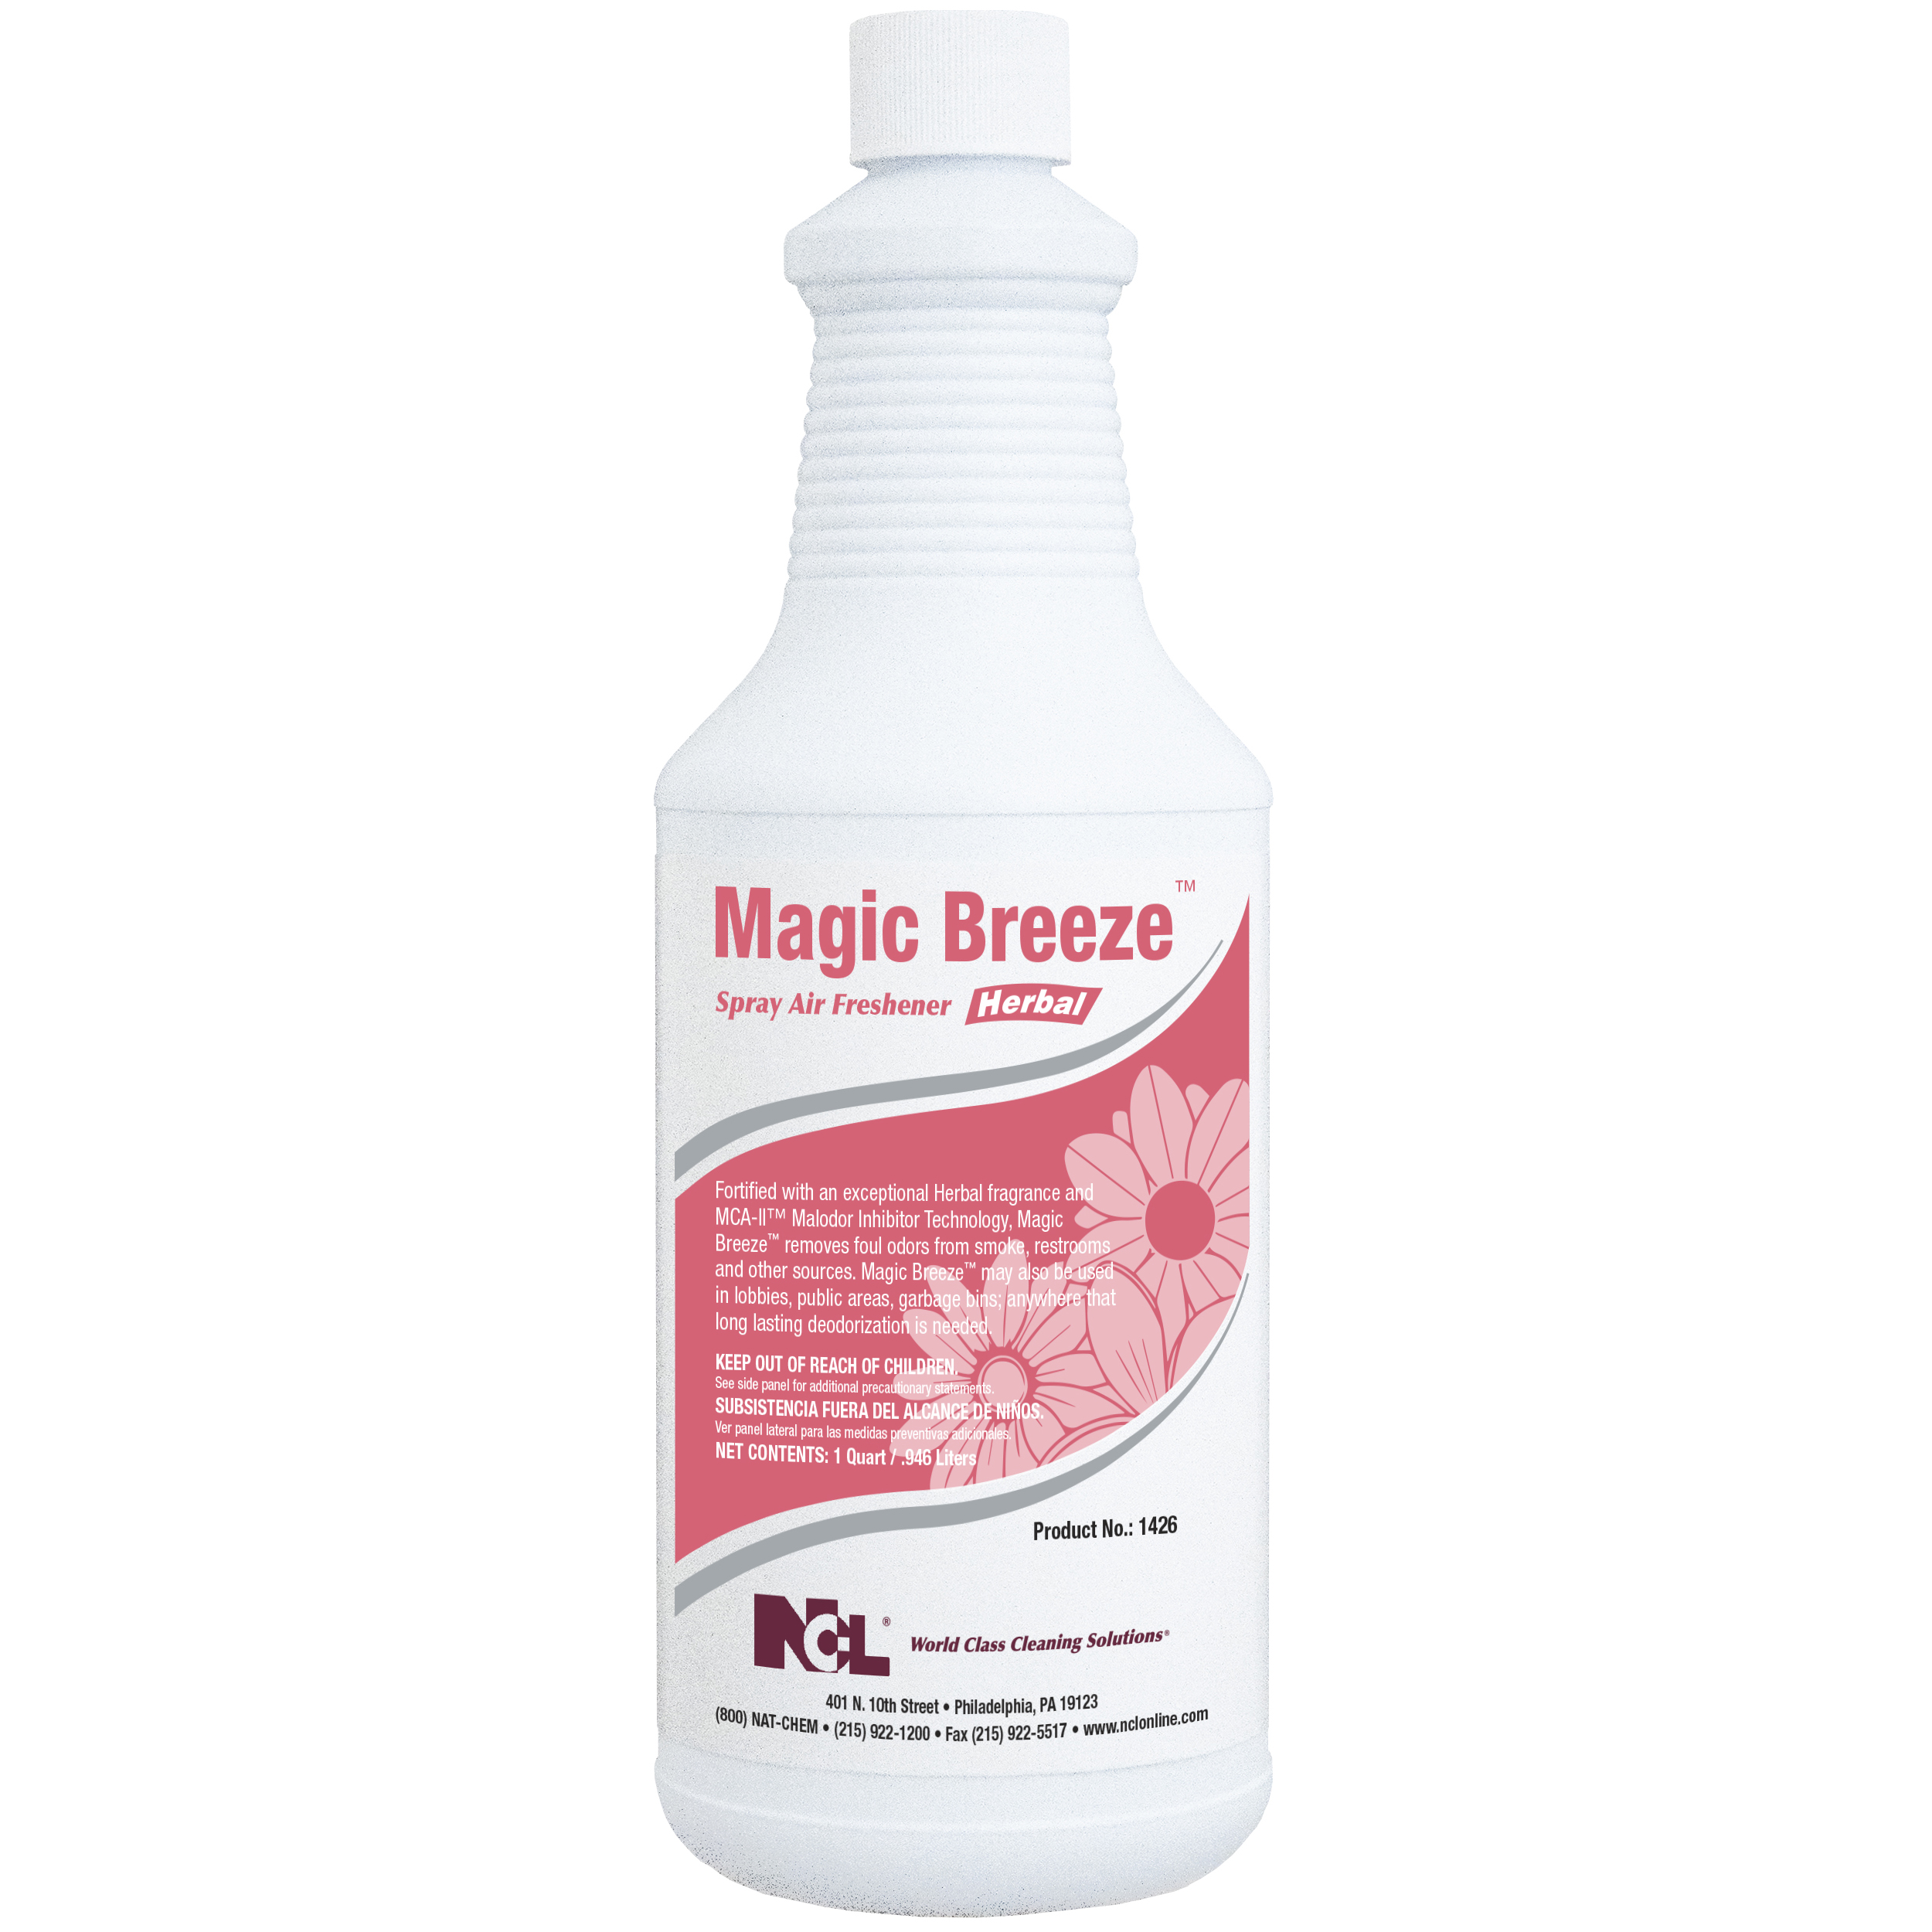  MAGIC BREEZE-Herbal Multi-Purpose Cleaner / Deodorizer 12/32 oz (1 Qt.) Case (NCL1426-36) 